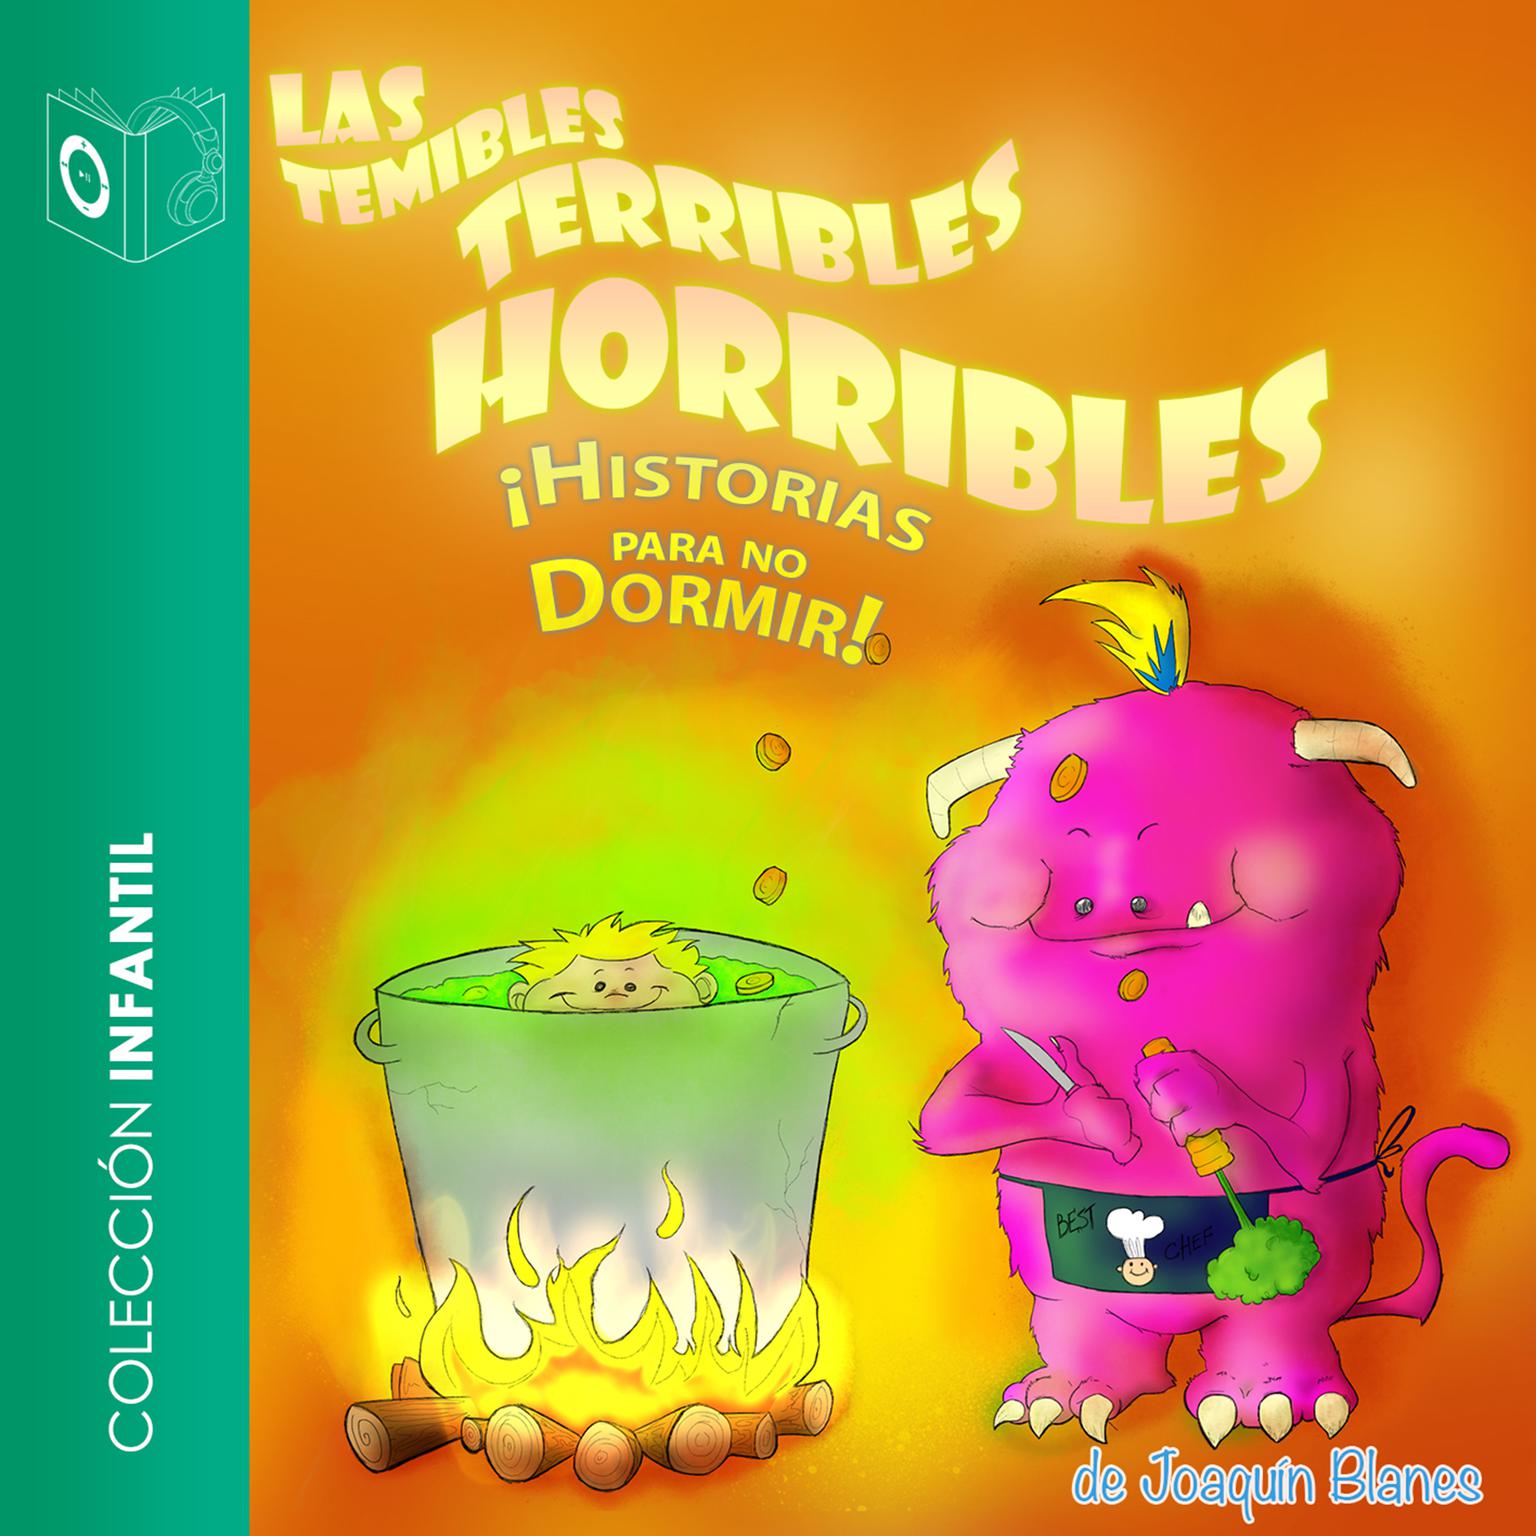 Las temibles terribles horribles historias para no dormir Audiobook, by Joaquín Blanes